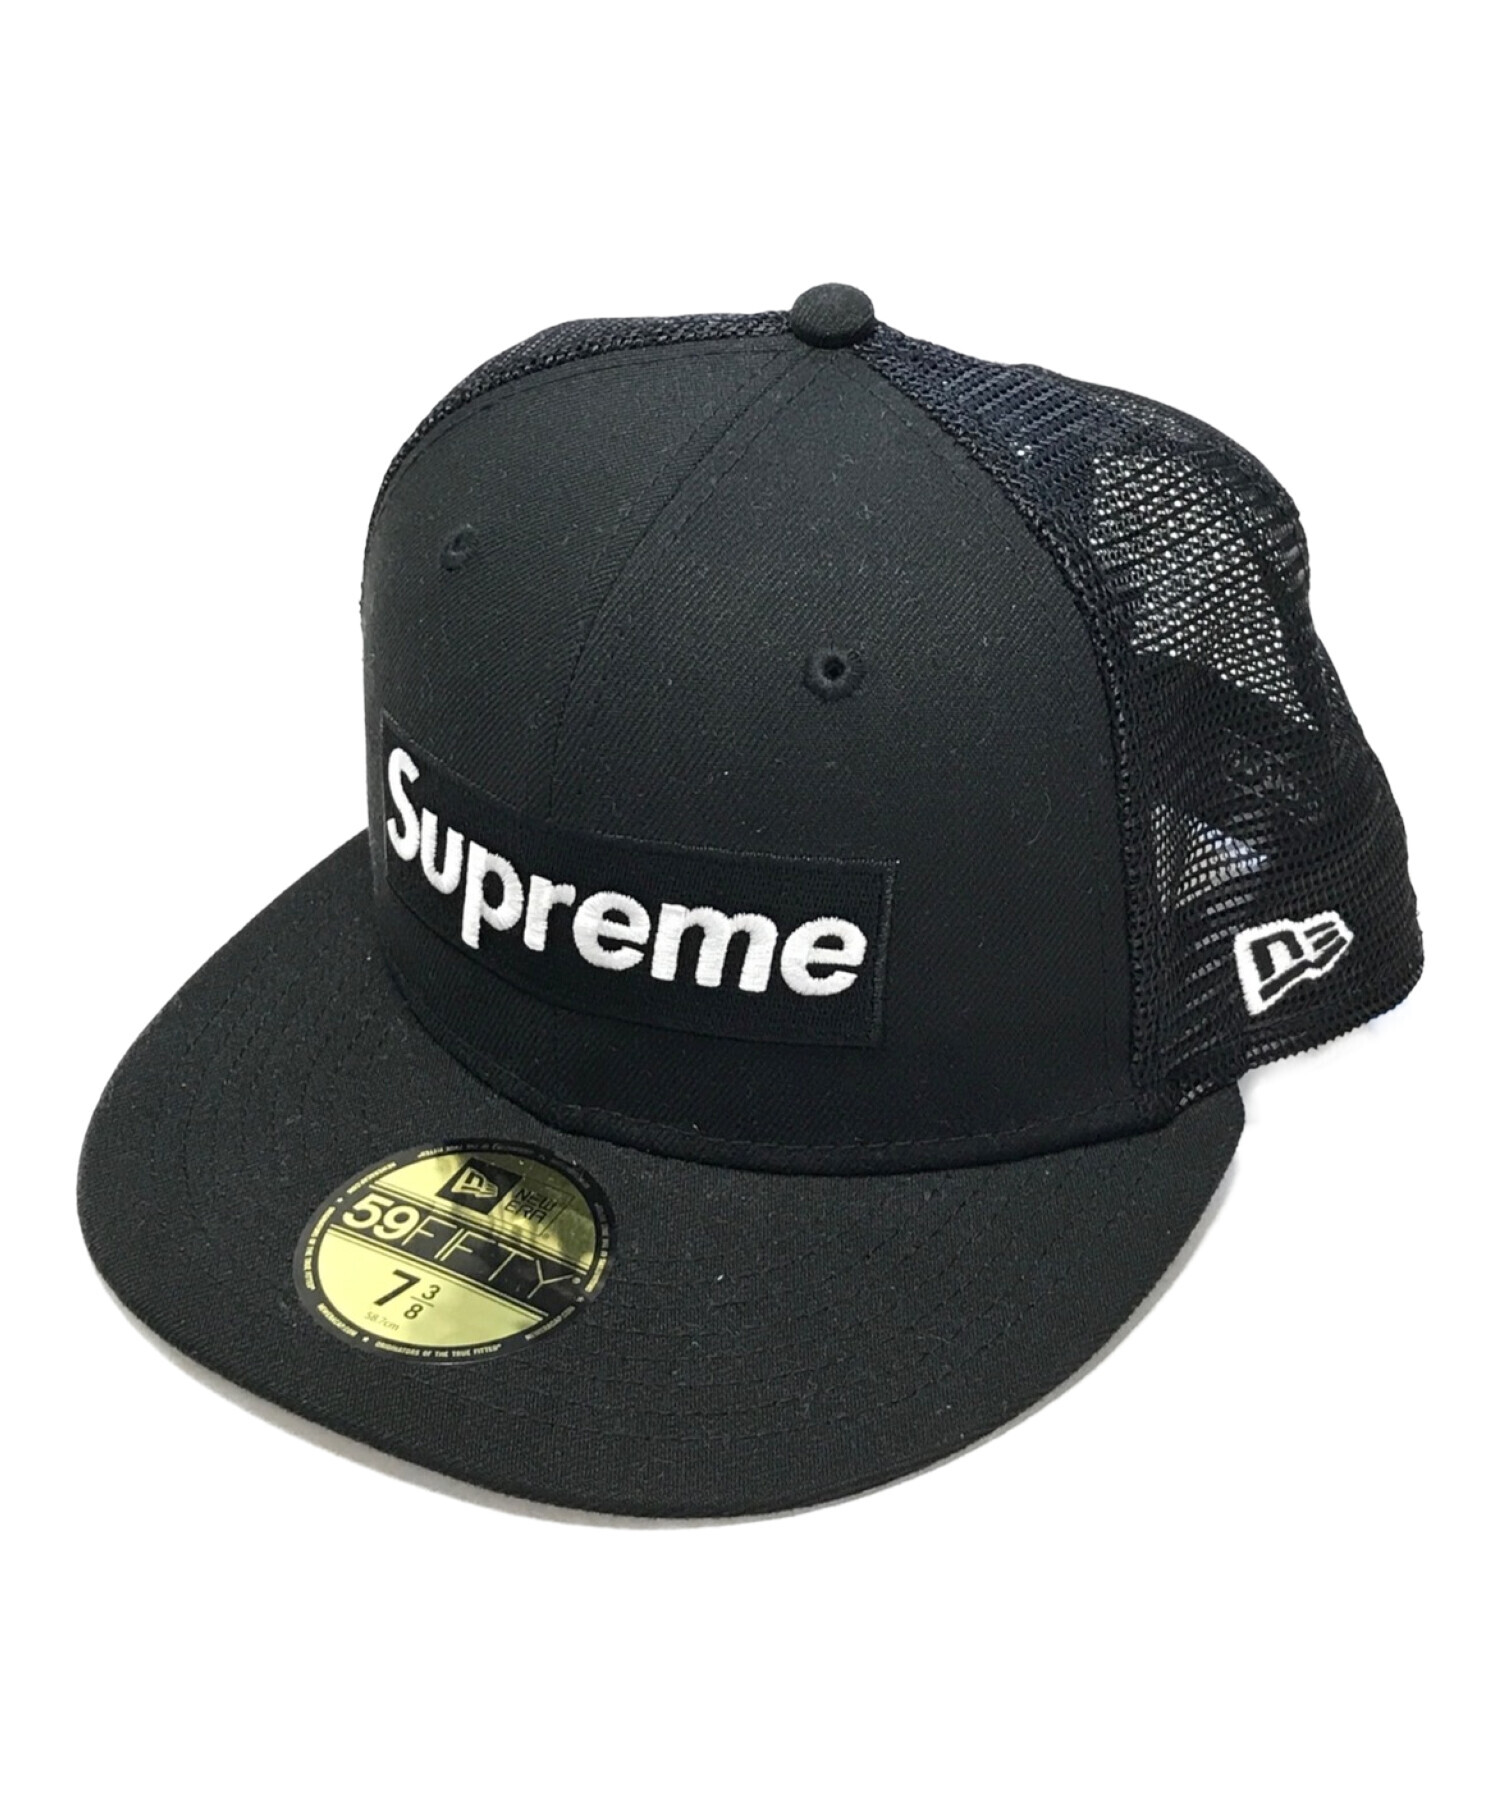 Supreme newera cap black size 7 3/8 58.7キャップ